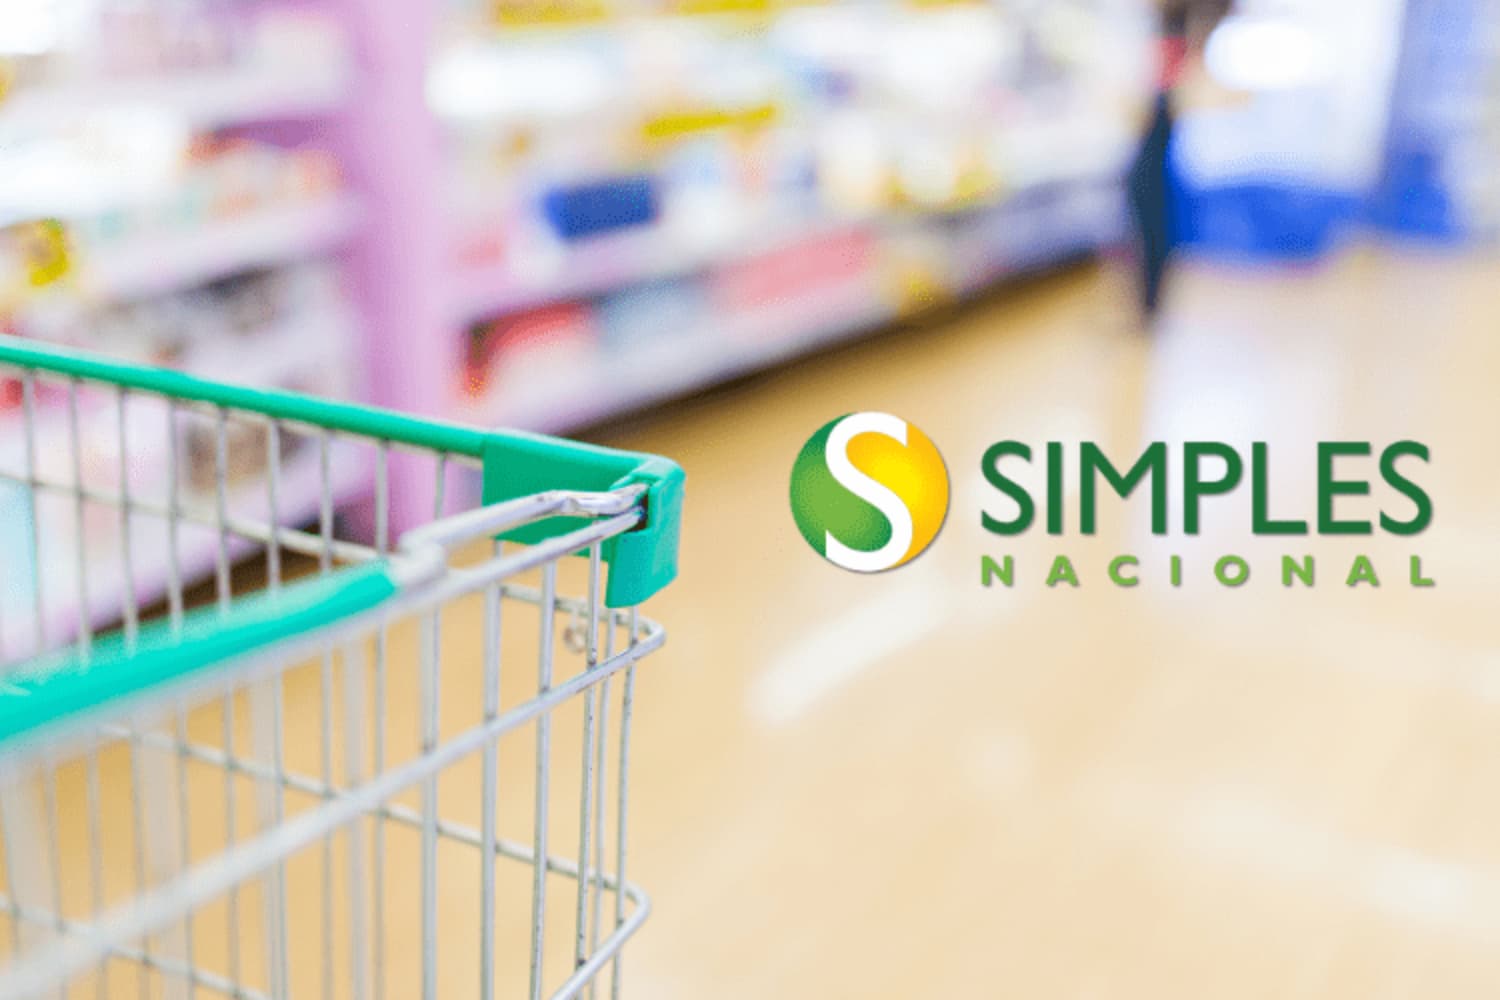 Enquadramento Simples Nacional Para Supermercados Descubra As Vantagens - ROCA CONTABILIDADE